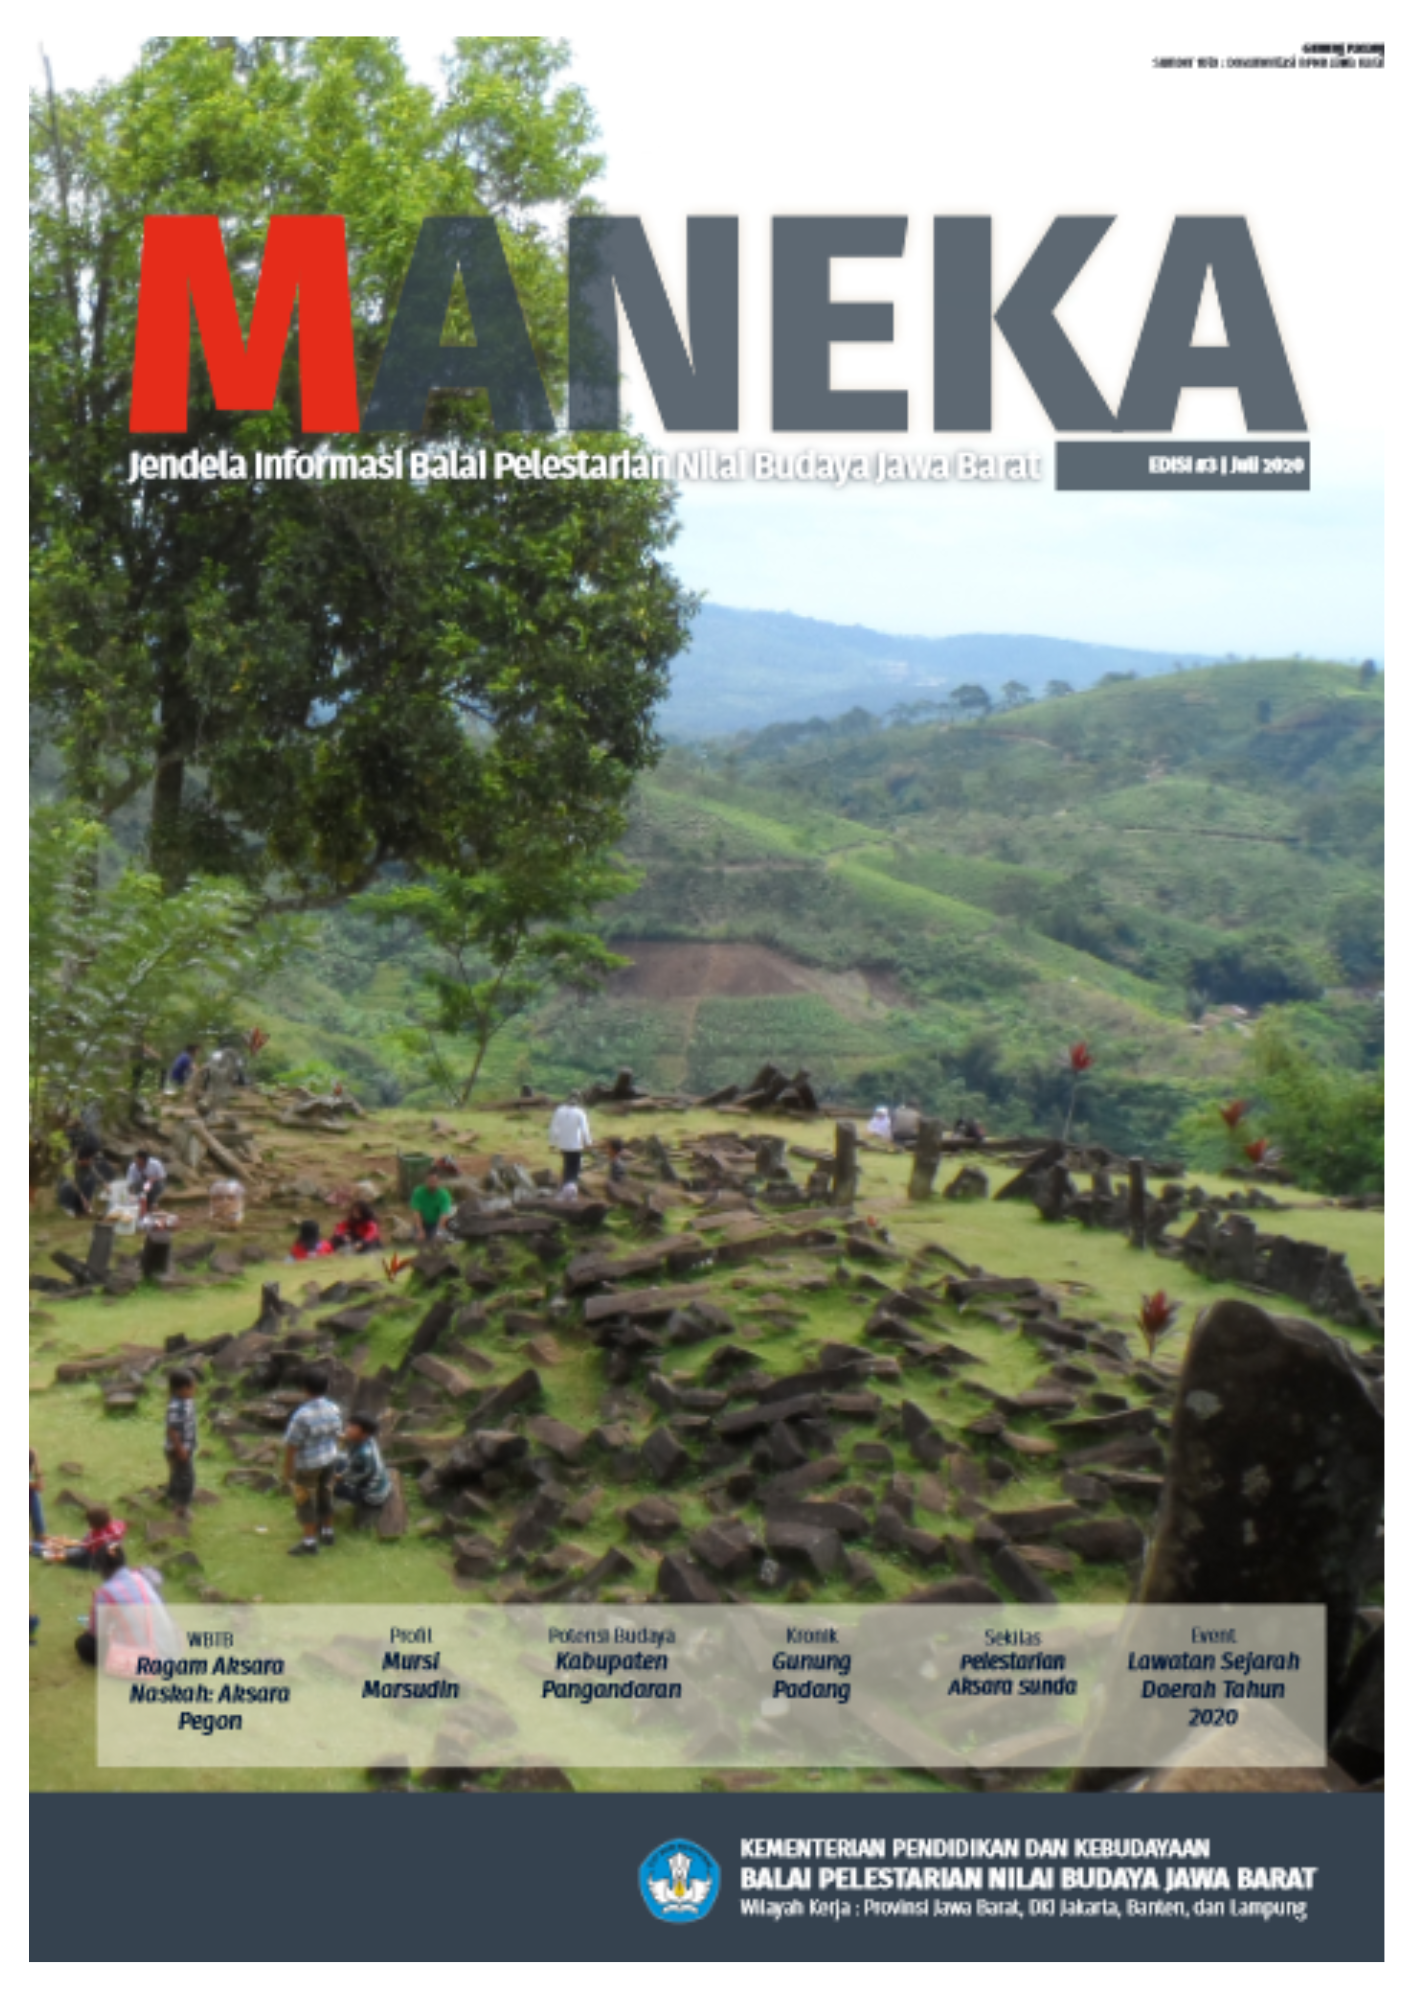 You are currently viewing MANEKA Vol.2 No.1- EDISI #3 Juli 2020 – Jendela Informasi Balai Pelestarian Nilai Budaya Jawa Barat